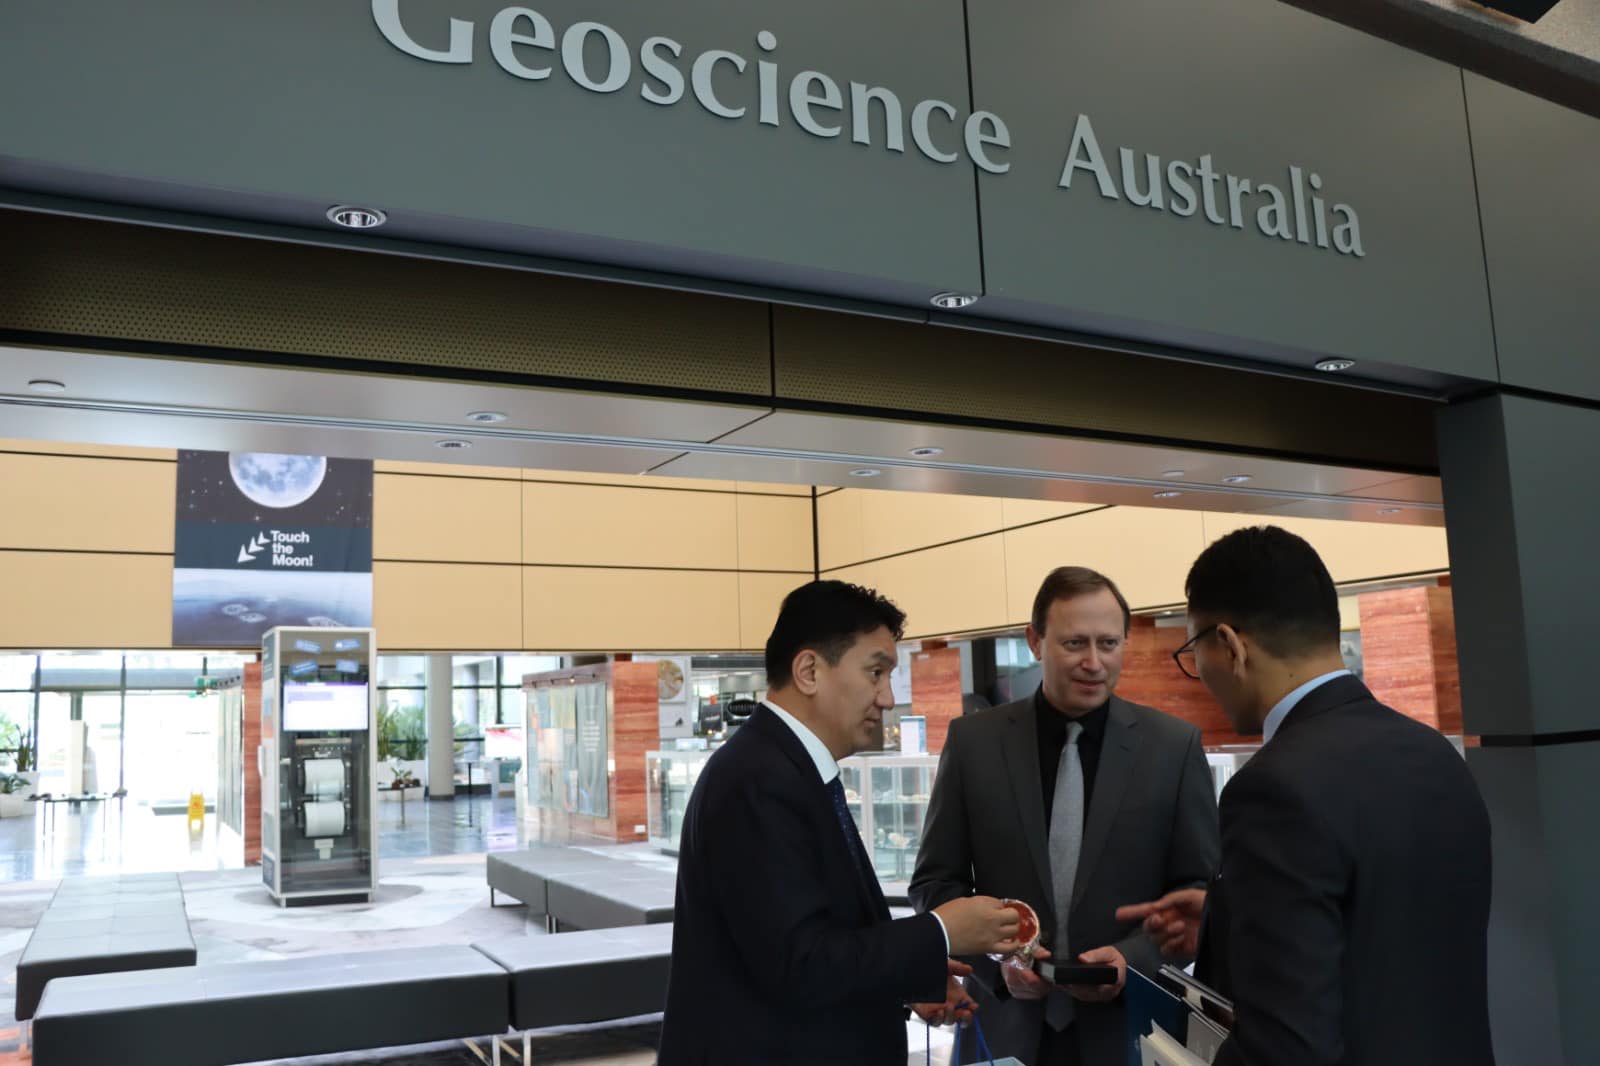 Австралийн Гео шинжлэх ухааны агентлагийн үйл ажиллагаатай танилцлаа